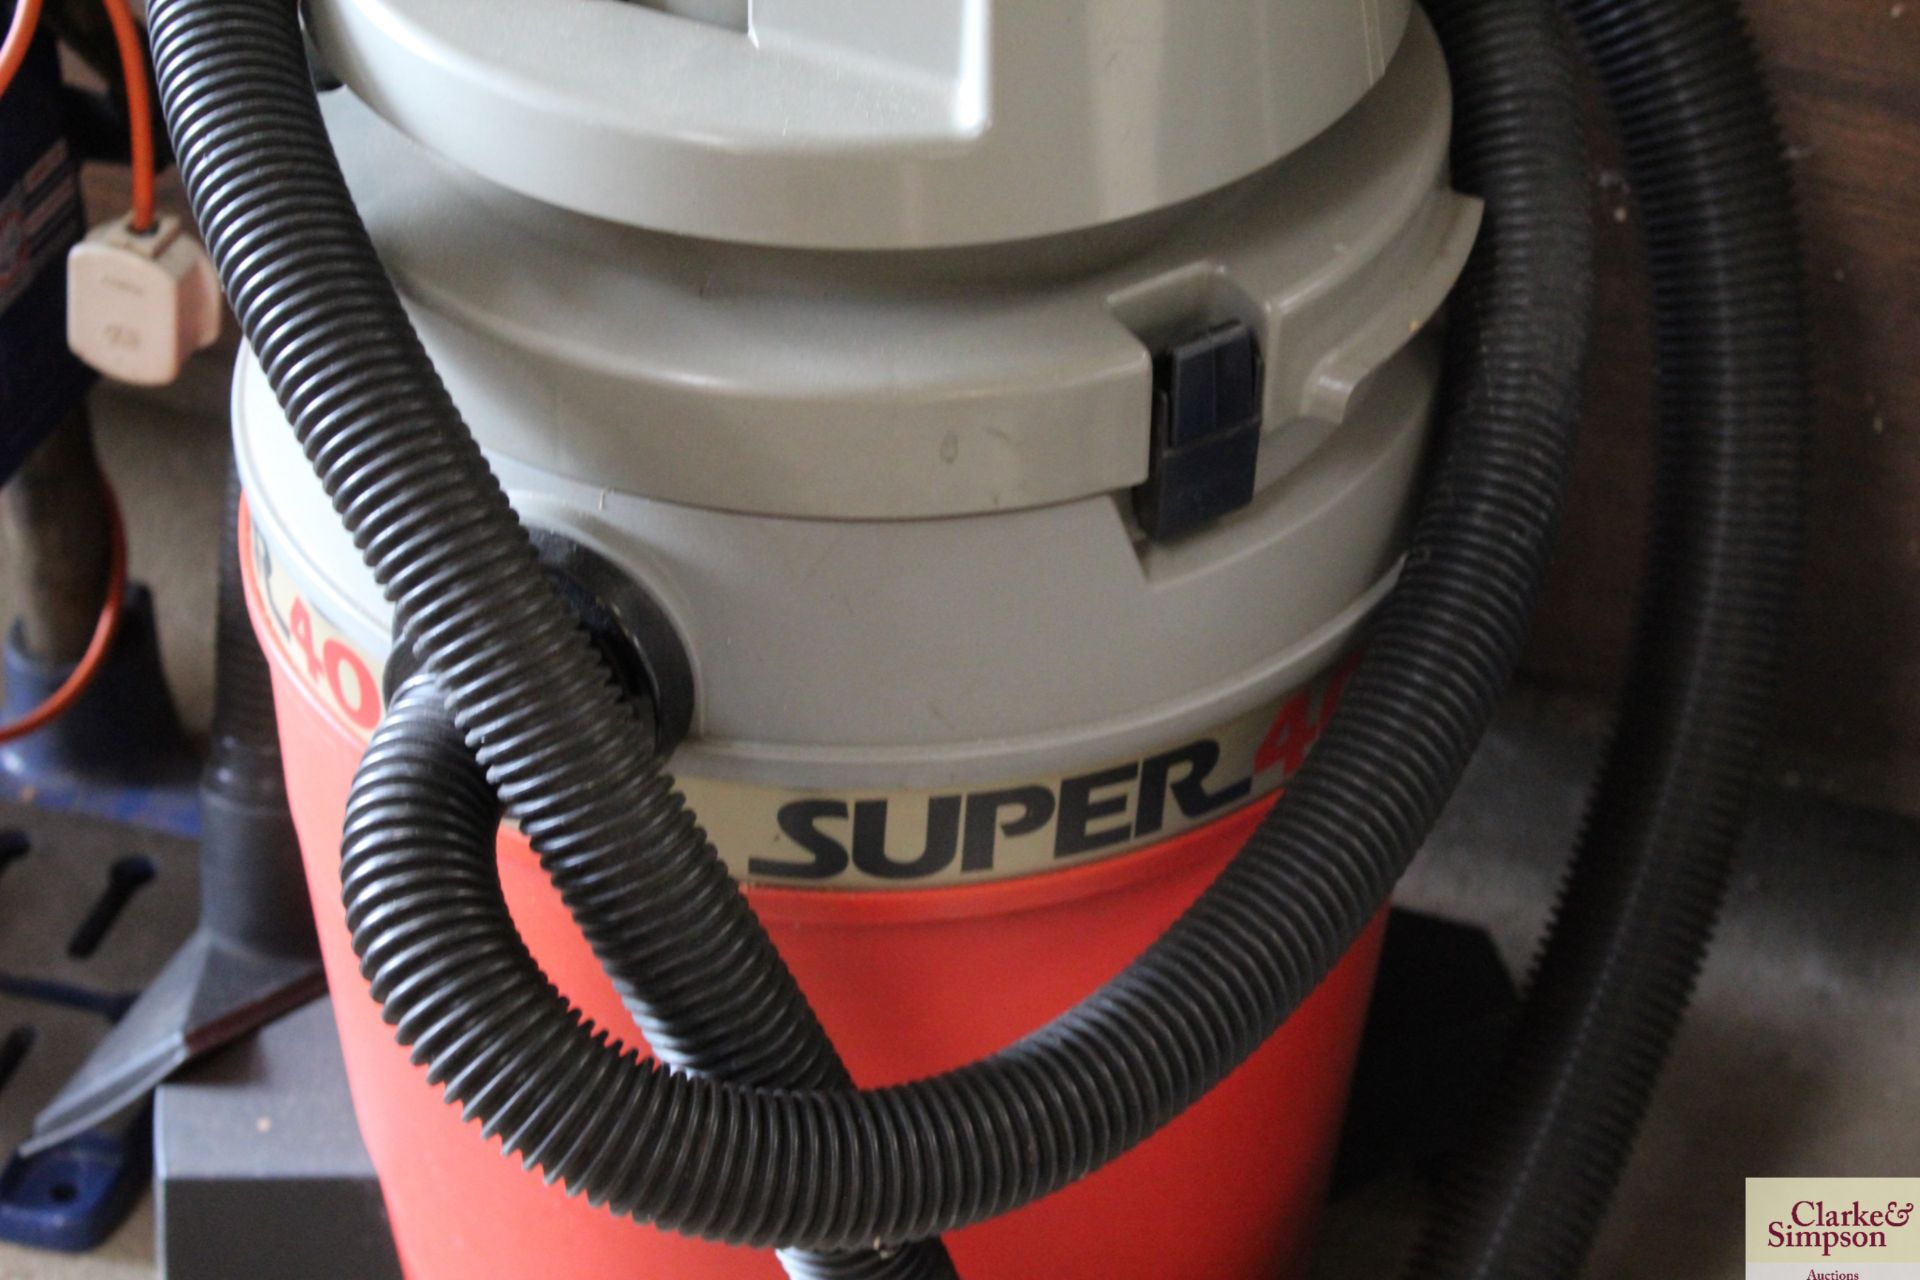 Aquavac Super40 vacuum cleaner. - Image 3 of 4